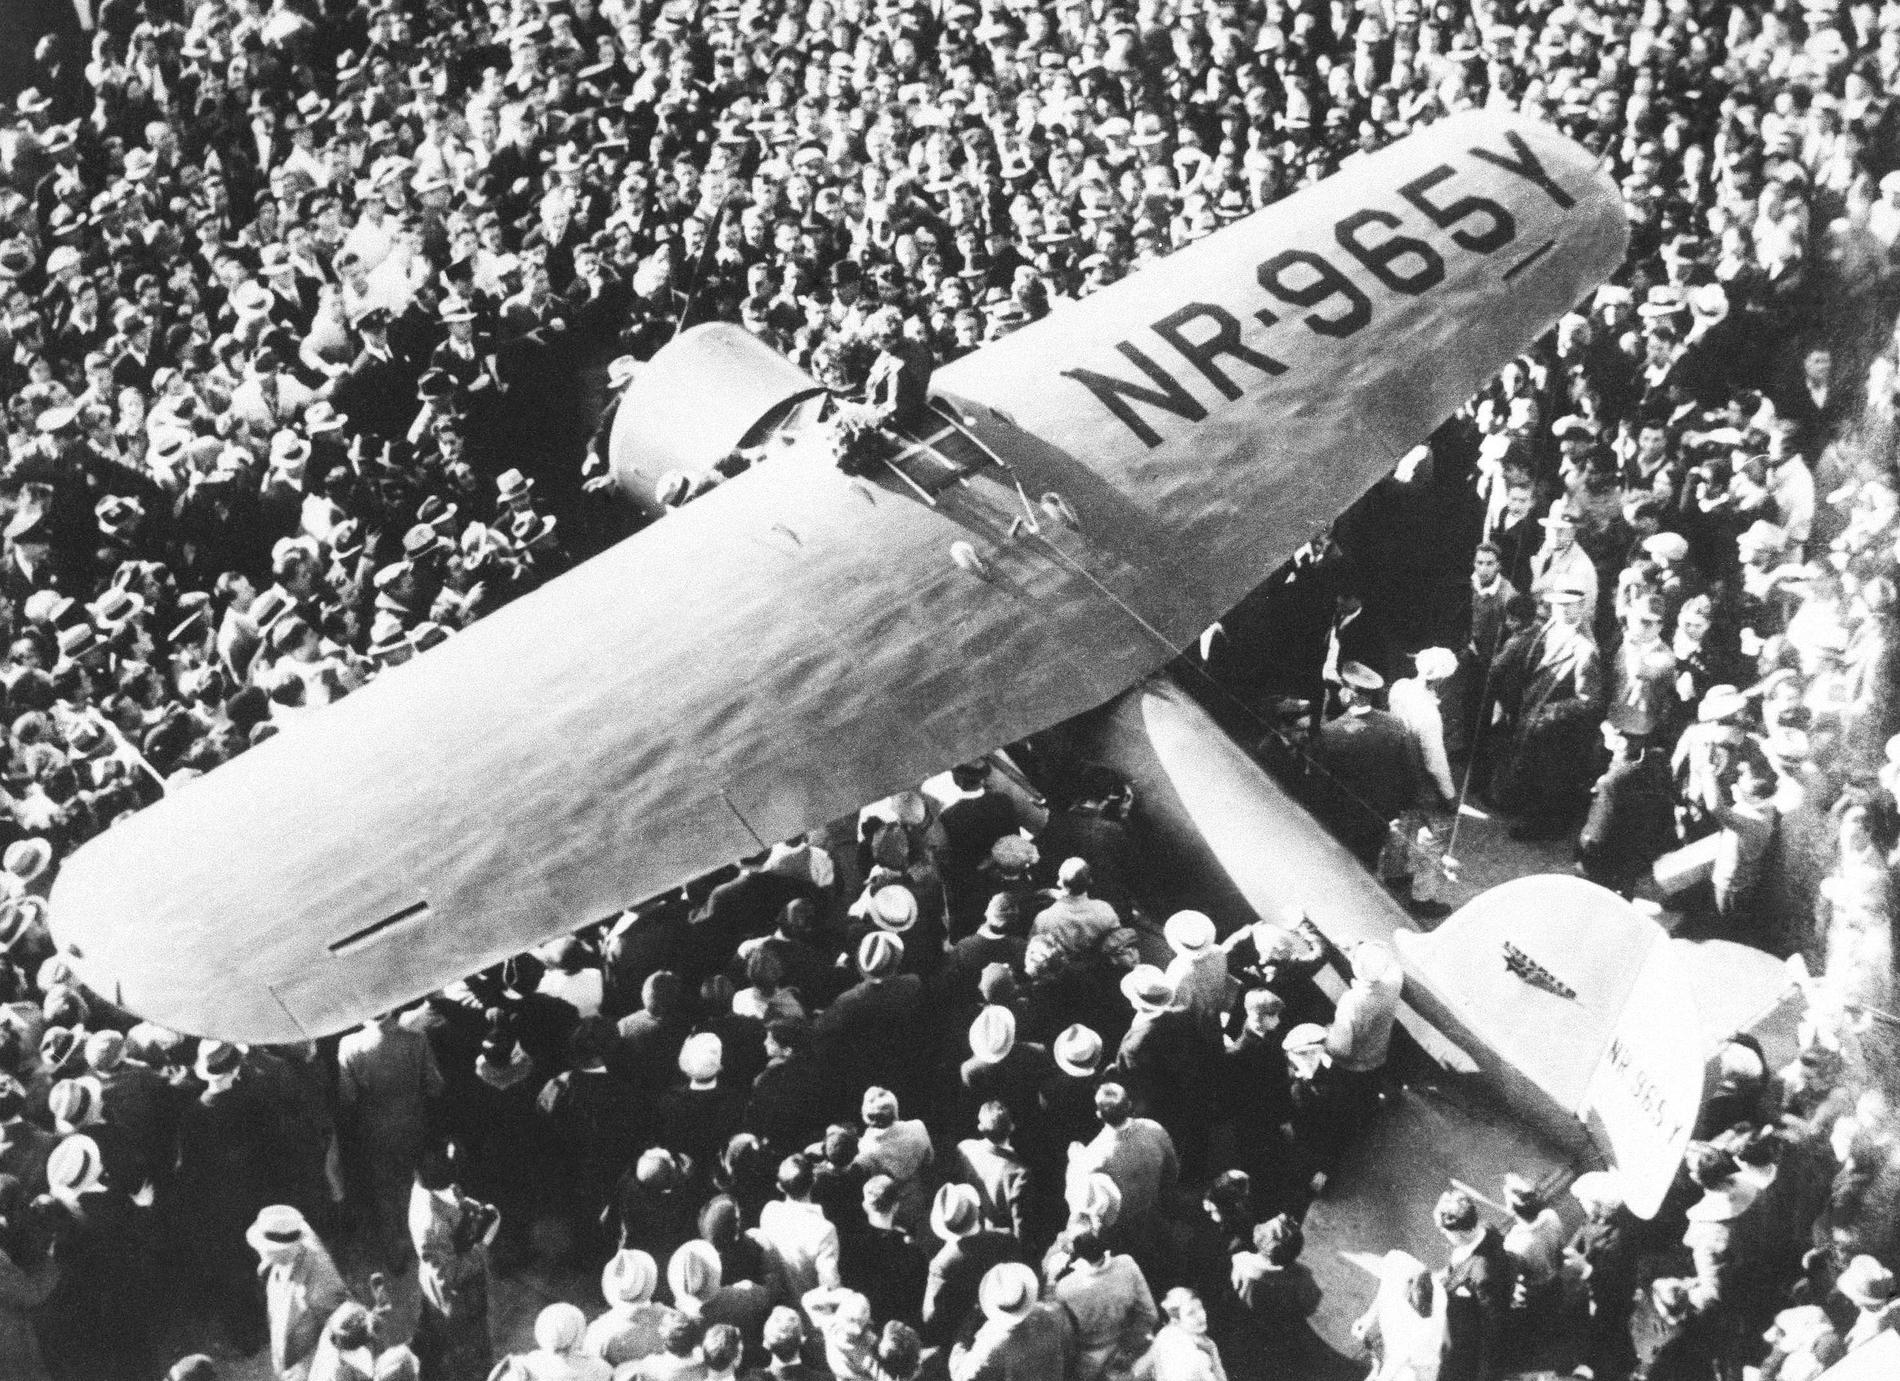  Amelia Earhart med sin Lockheed Vega omgiven av en folkmassa efter att hon blev den första kvinnan att flyga solo från Hawaii till Kalifornien 1935.